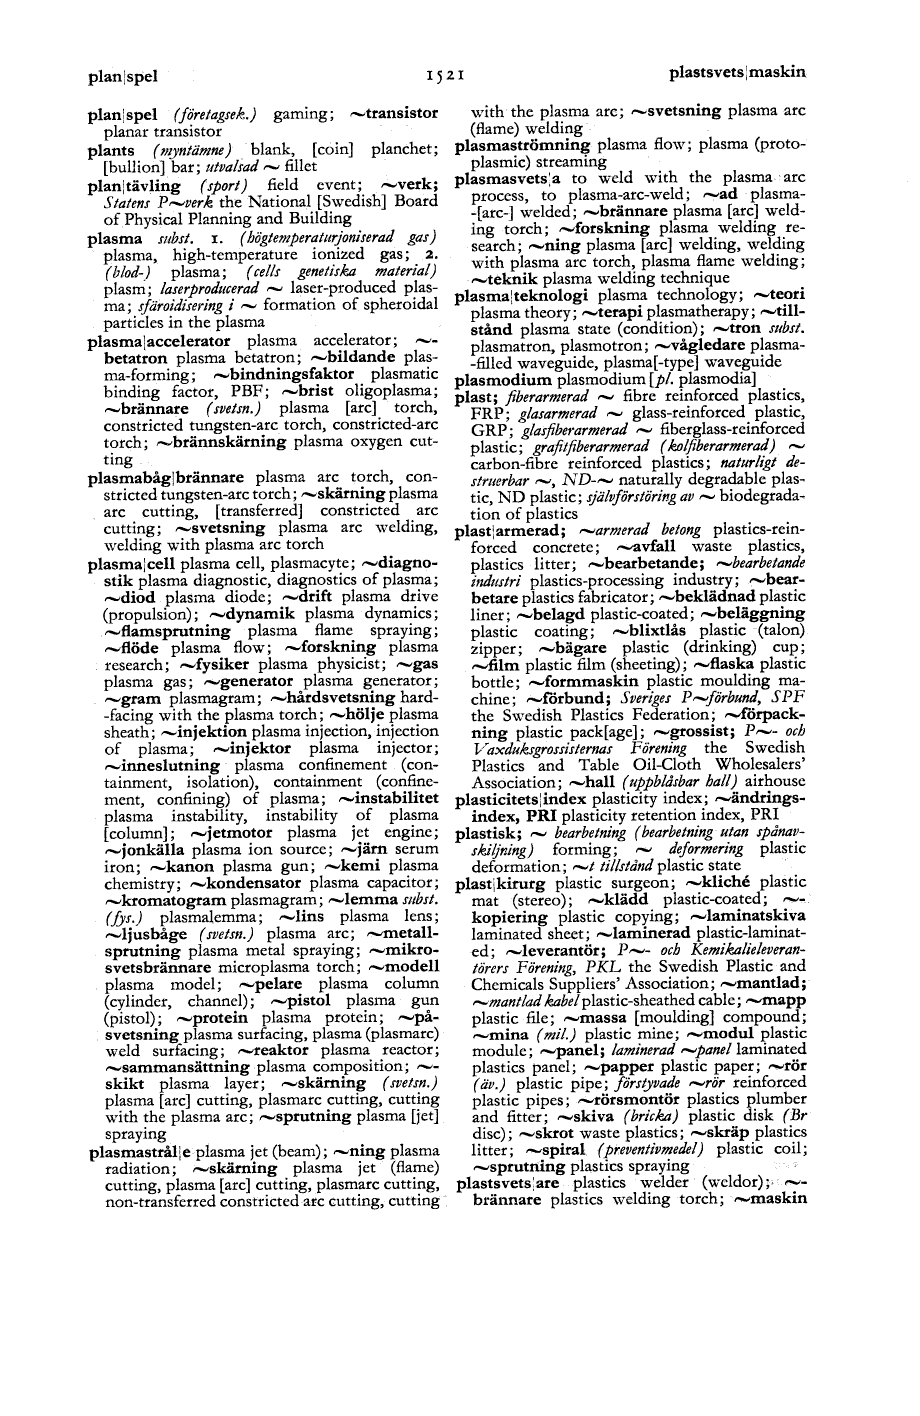 1521 (Svensk-engelsk fackordbok för näringsliv, förvaltning ...